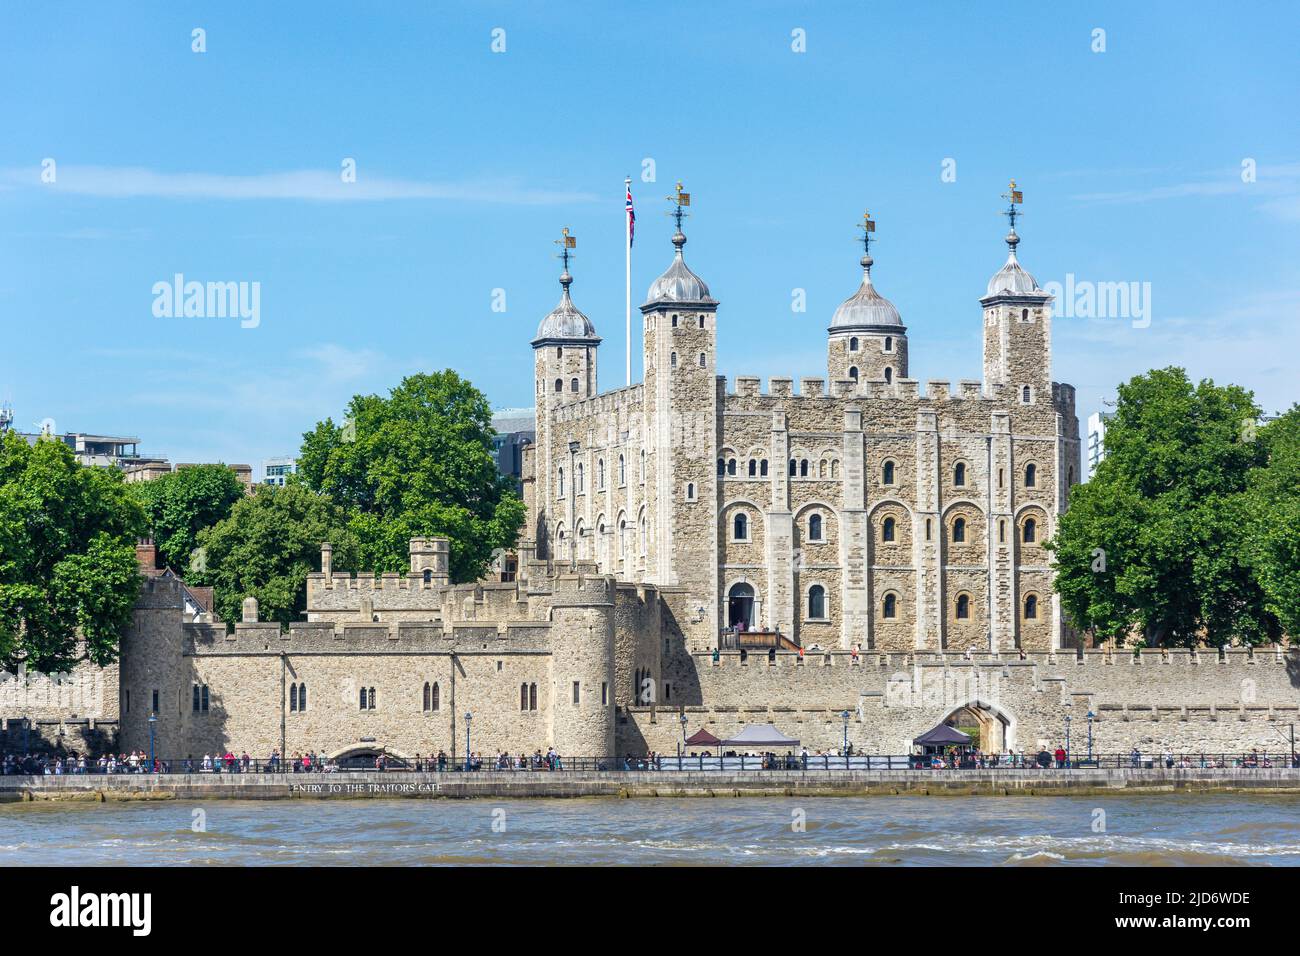 Der Tower of London auf der anderen Seite der Themse, Southwark, der Londoner Stadtbezirk Southwark, Greater London, England, Vereinigtes Königreich Stockfoto